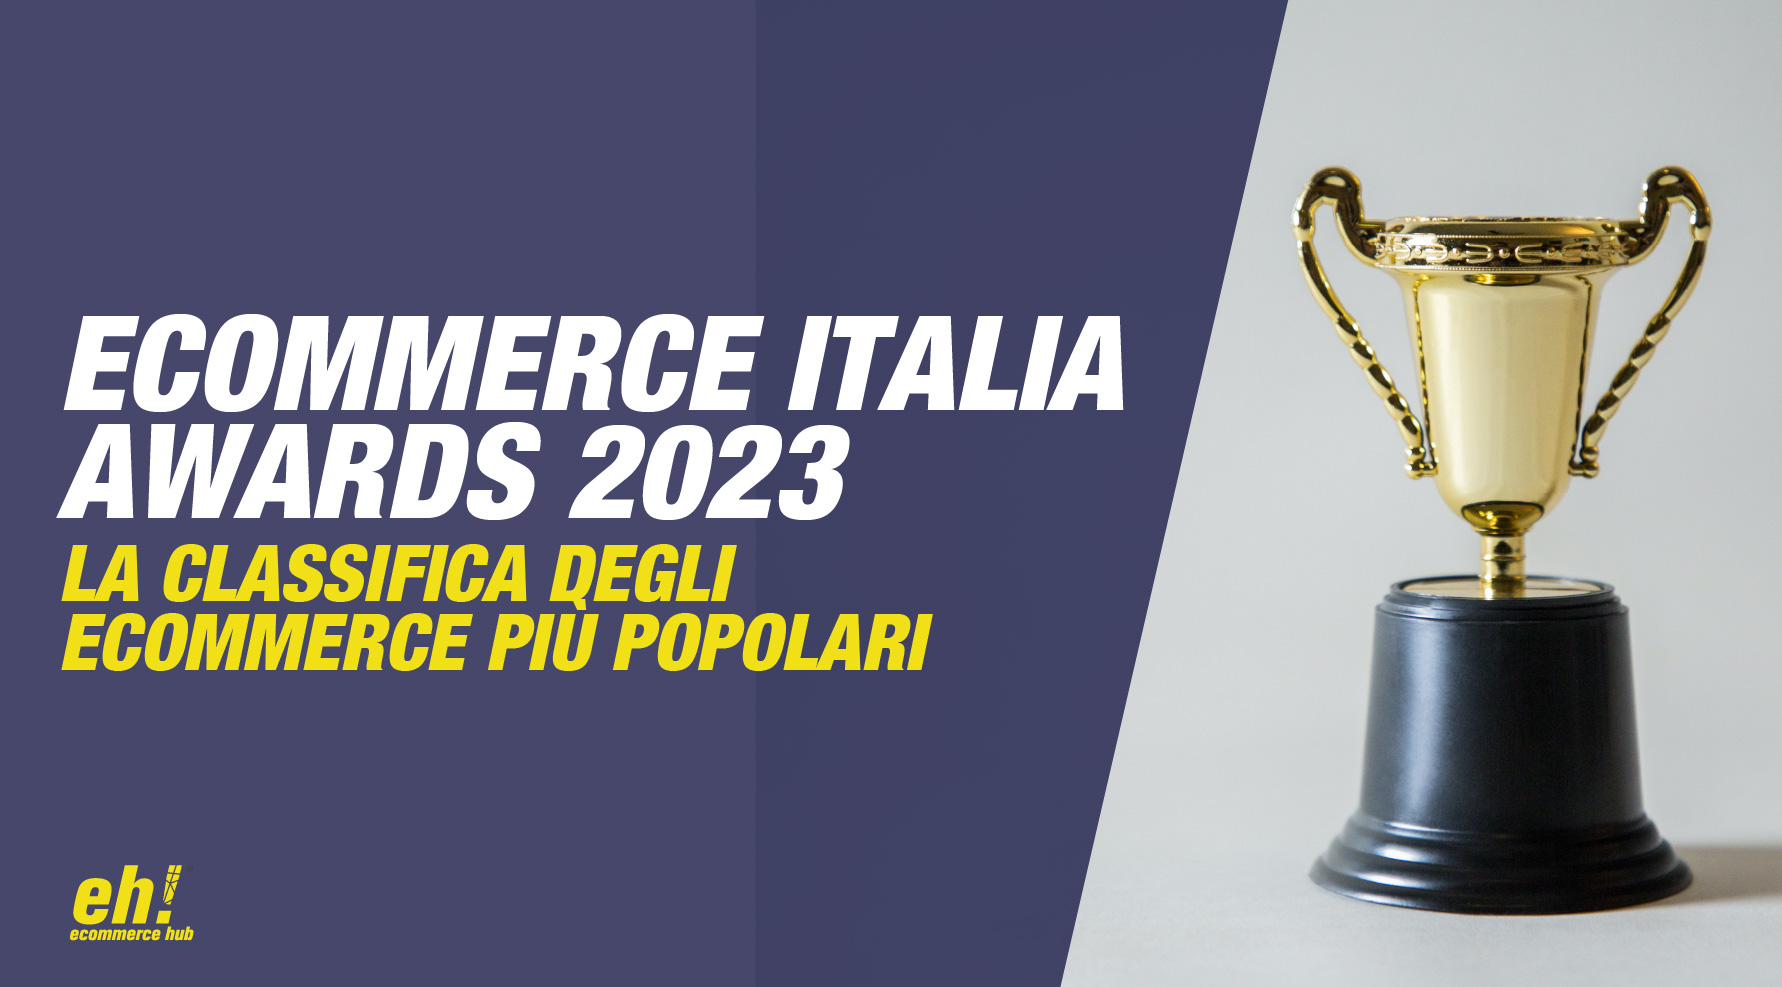 ecommerce italia awards